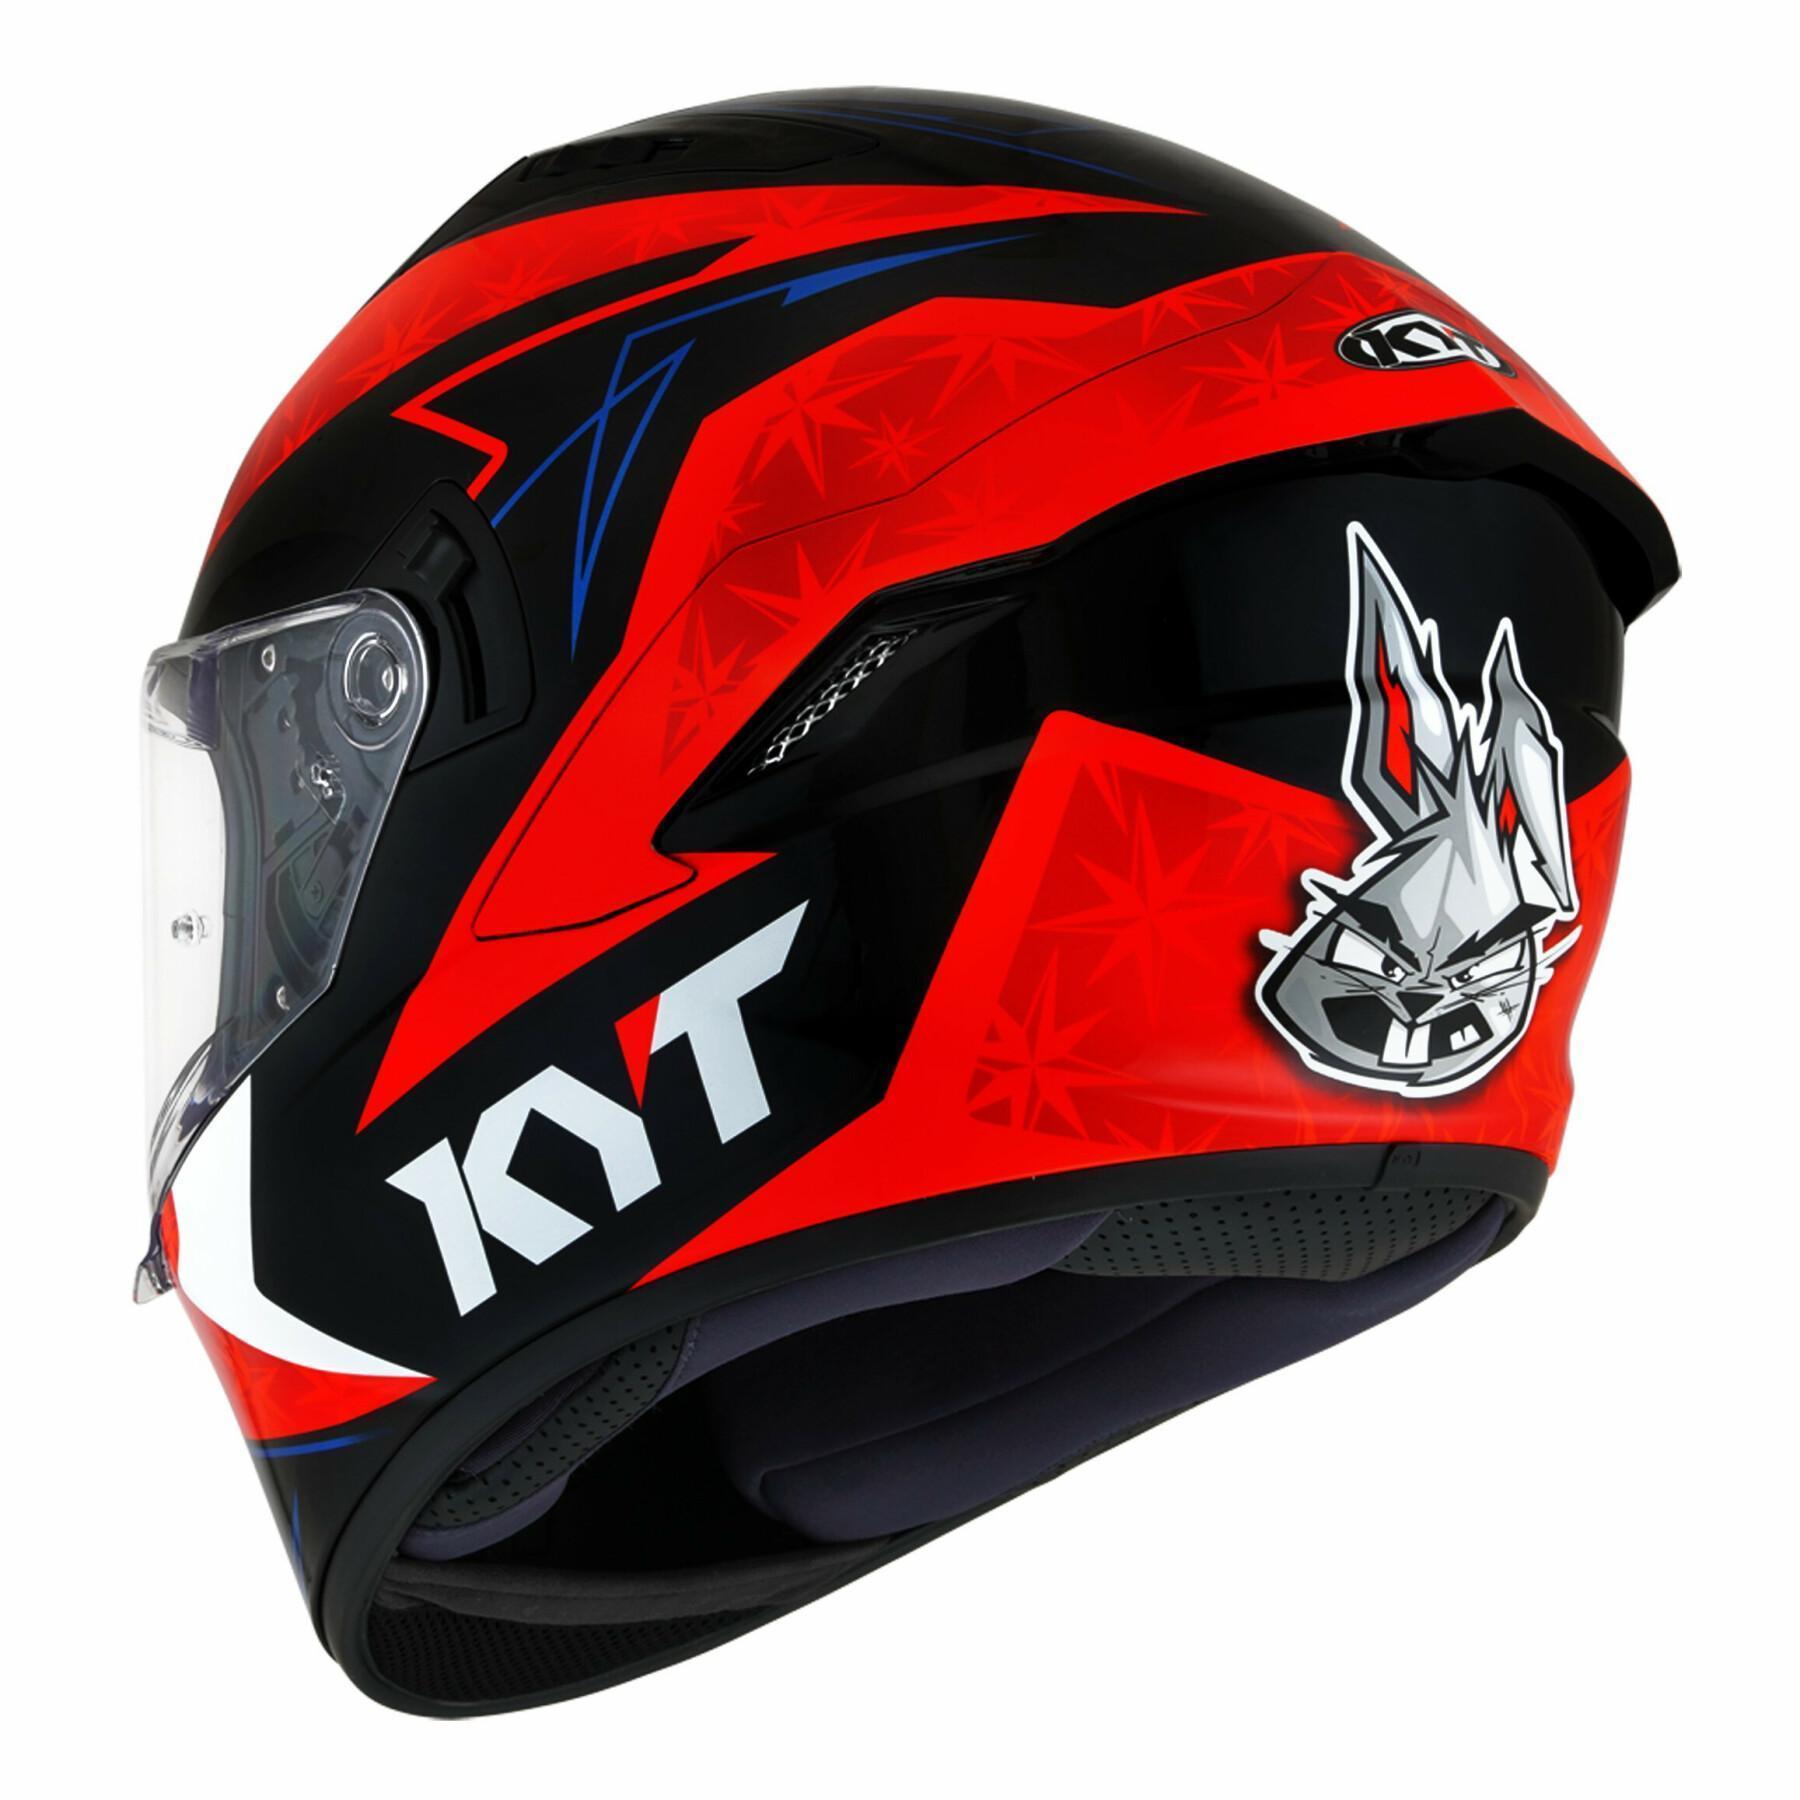 Full face helmet Kyt nf-r force